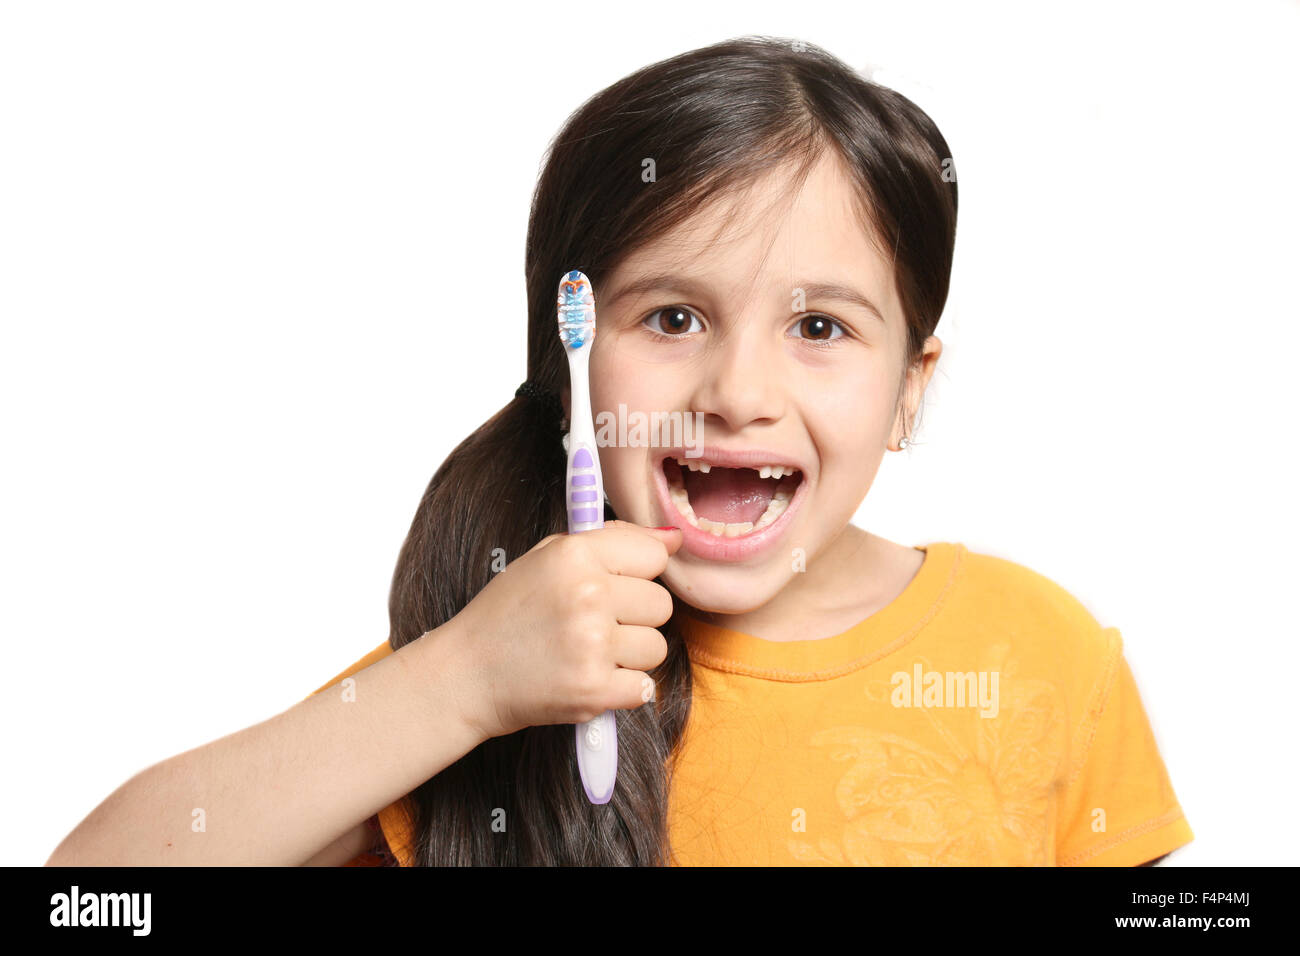 Sieben Jahres altes Mädchen zeigt großes Lächeln zeigt, fehlen die oberen Schneidezähne und halten eine Zahnbürste auf weißem Hintergrund Stockfoto